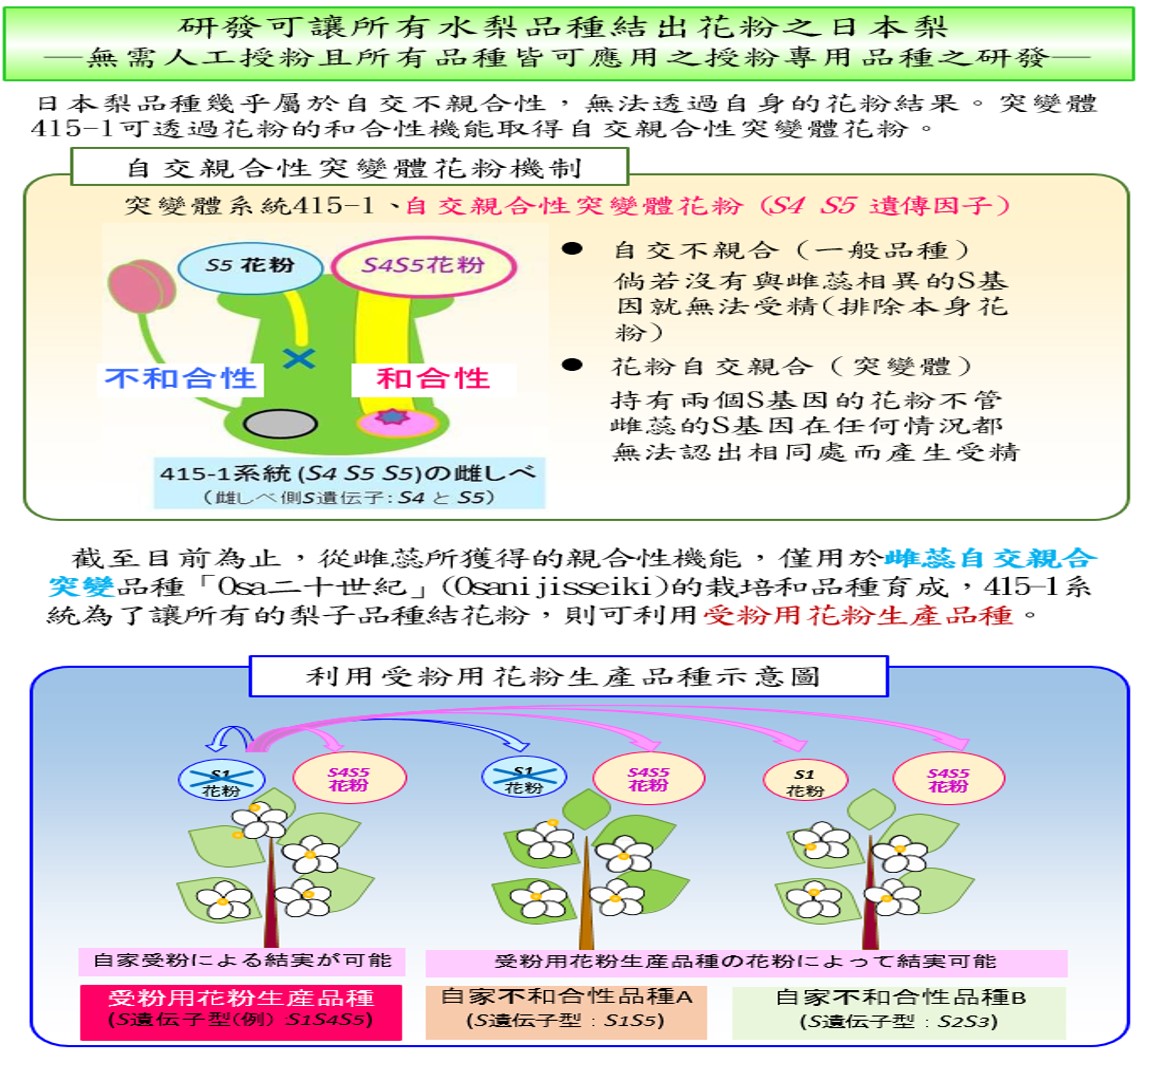 【日本】2015年十大農業技術研究-研發讓水梨品種結出花粉之日本梨系統-無需人工授粉且所有品種皆可應用授粉的專用品種之研發-2